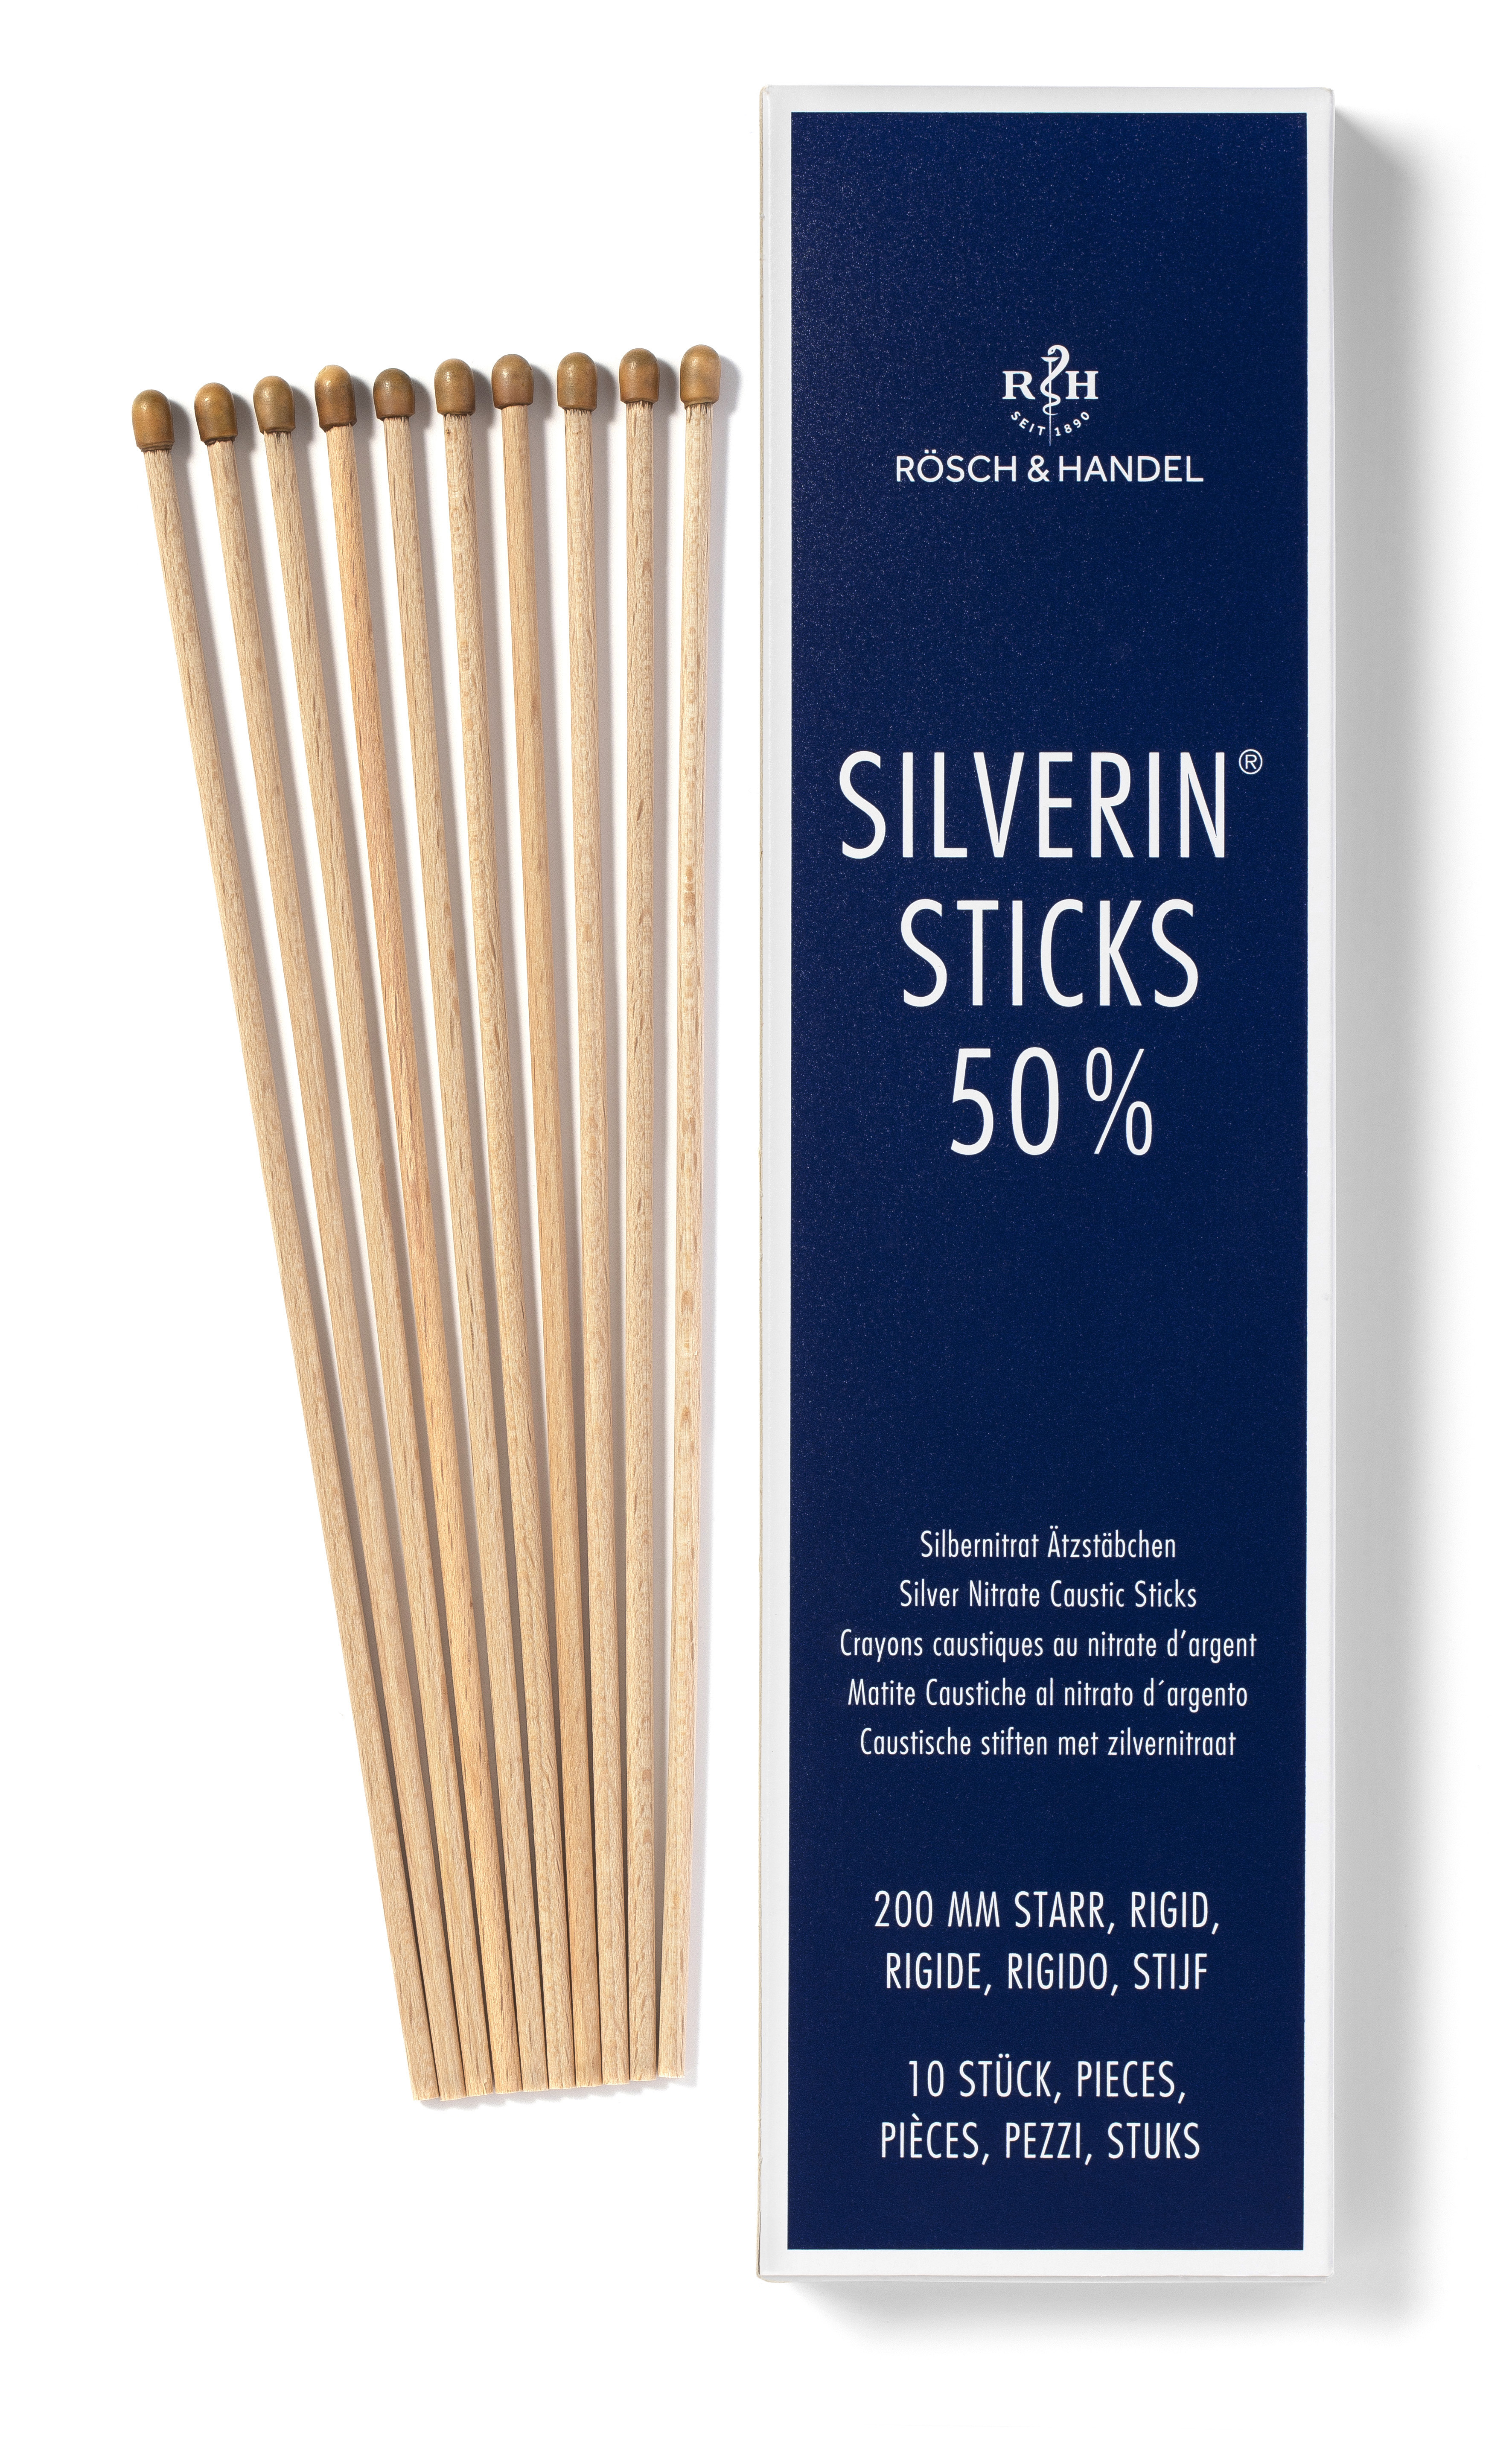 SILVERIN STICKS Matite caustiche al nitrato d’argento 50%